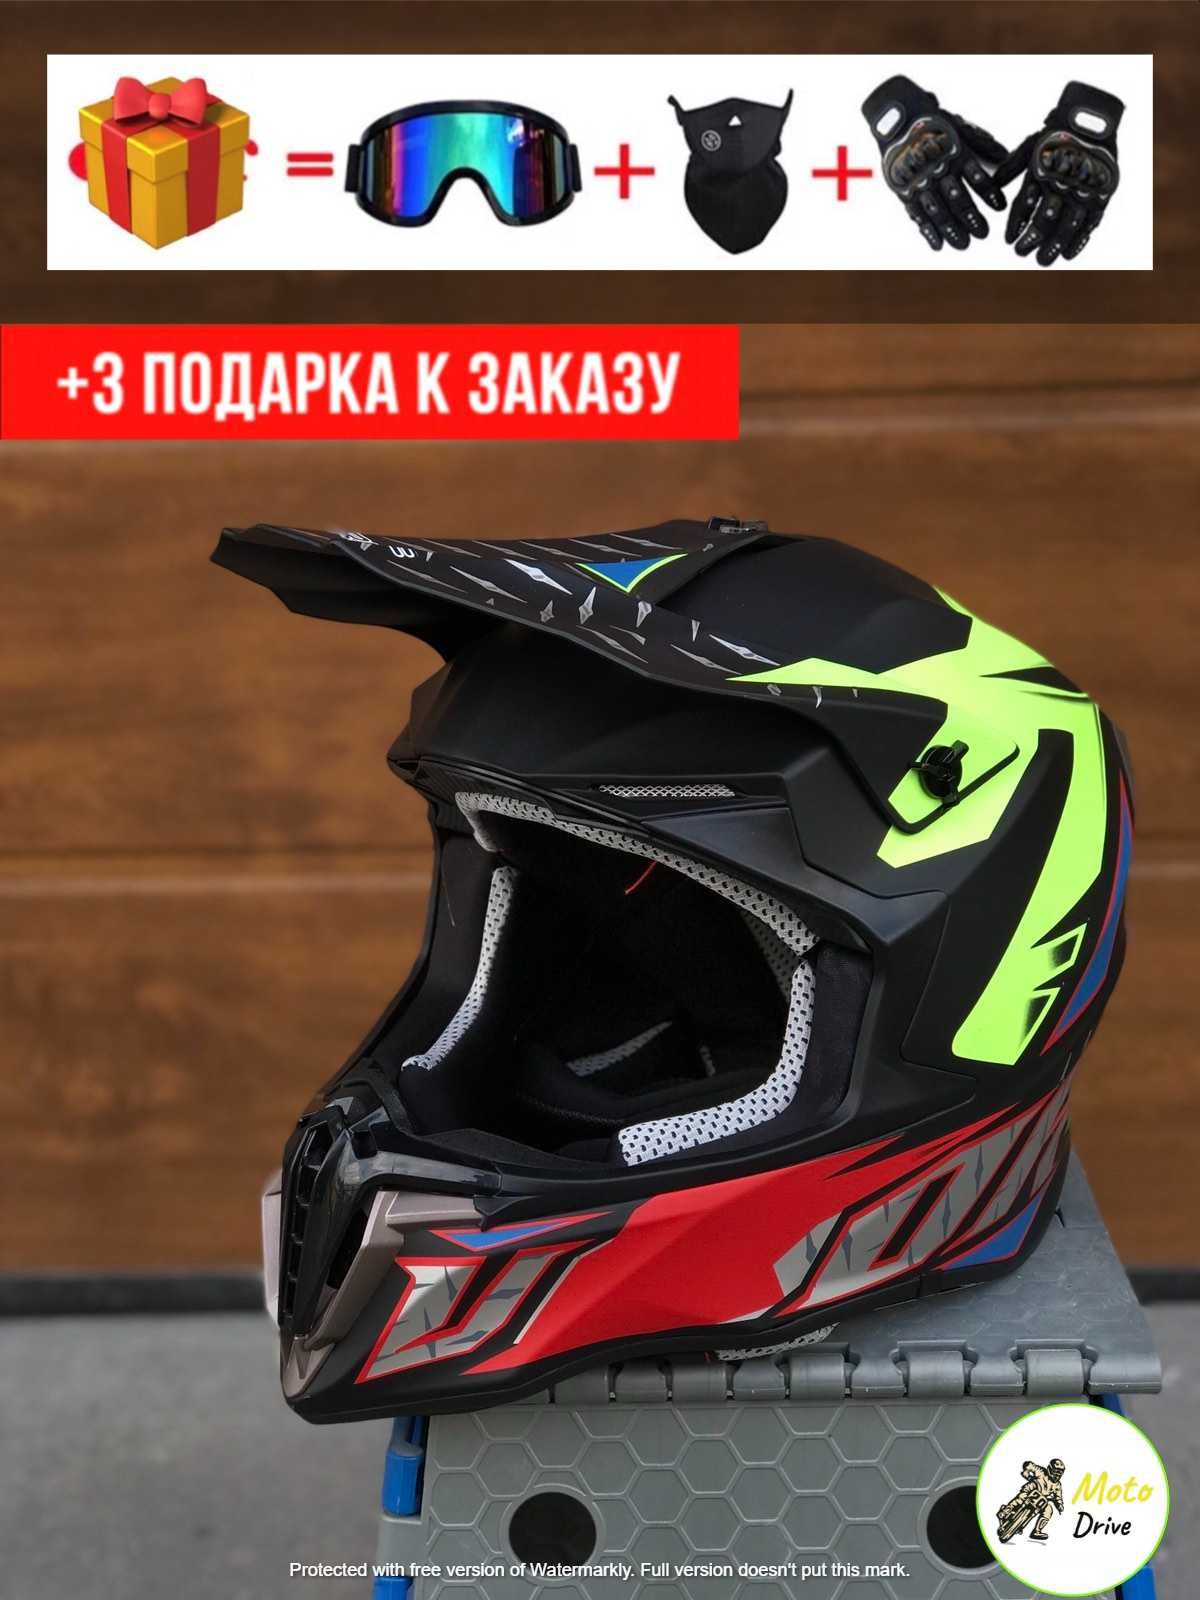 Мото Кроссовый шлем,фул фейс+3 подарки Очки+Перчатки+Балаклава